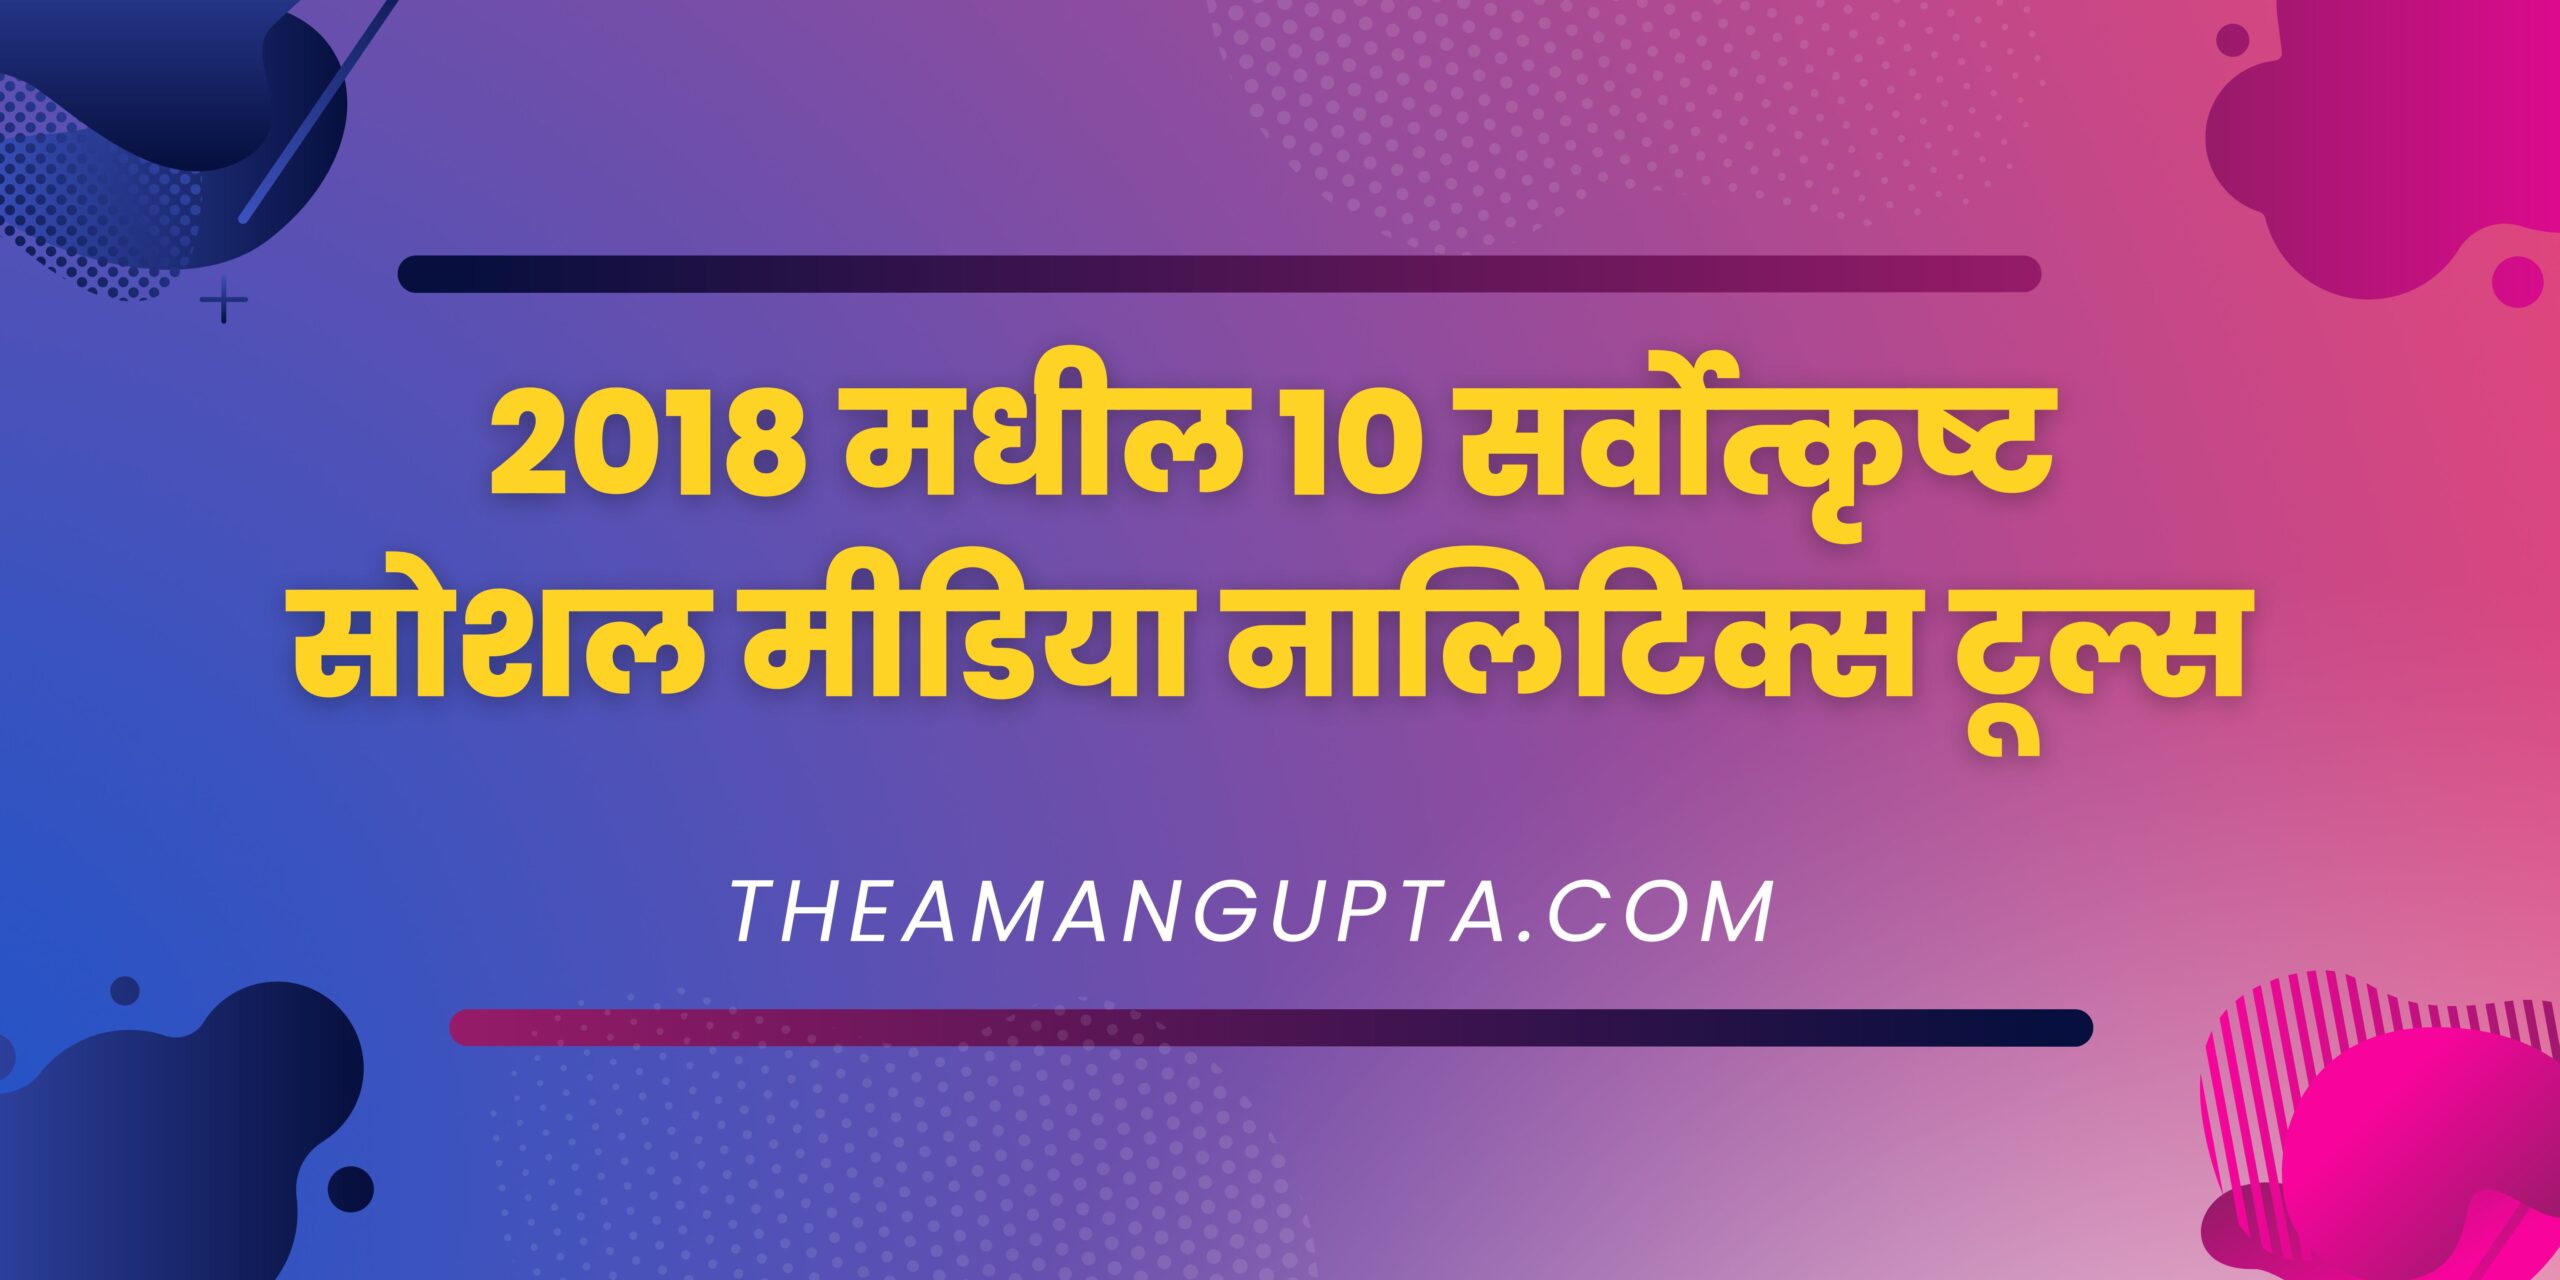 2018 मधील 10 सर्वोत्कृष्ट सोशल मीडिया नालिटिक्स टूल्स|| 10 सर्वोत्कृष्ट सोशल मीडिया|Theamangupta|Theamangupta